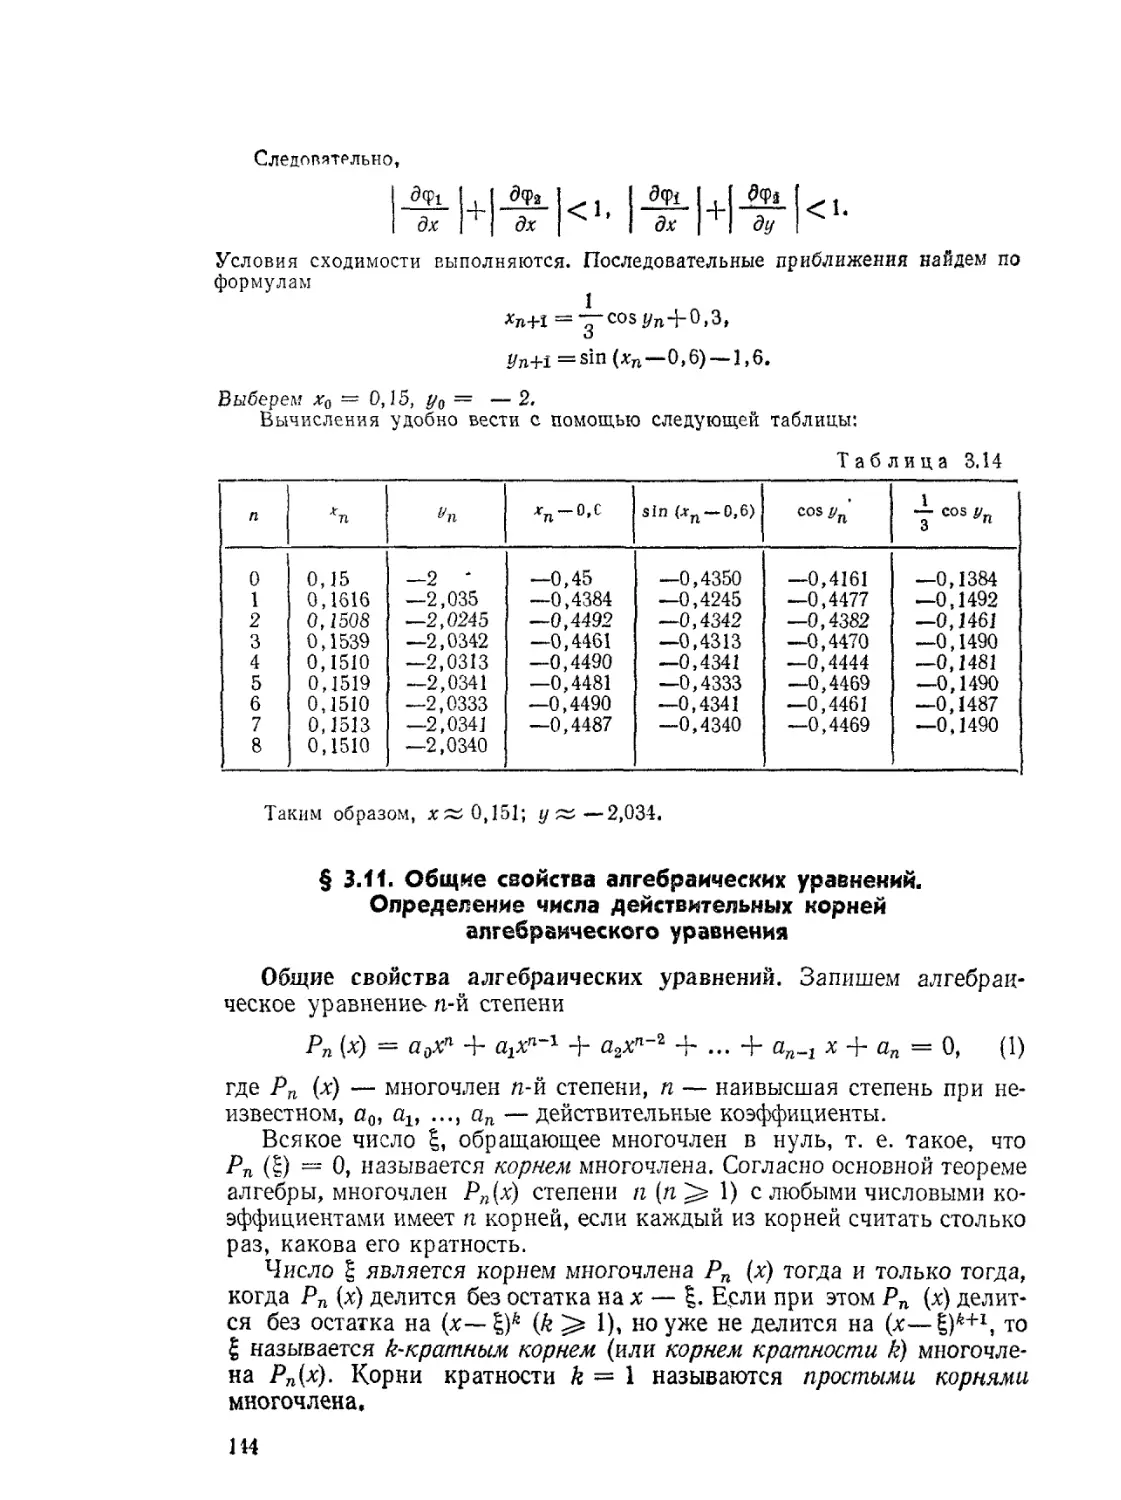 § 3.11. Общие свойства алгебраических уравнений. Определение числа действительных корней алгебраического уравнения